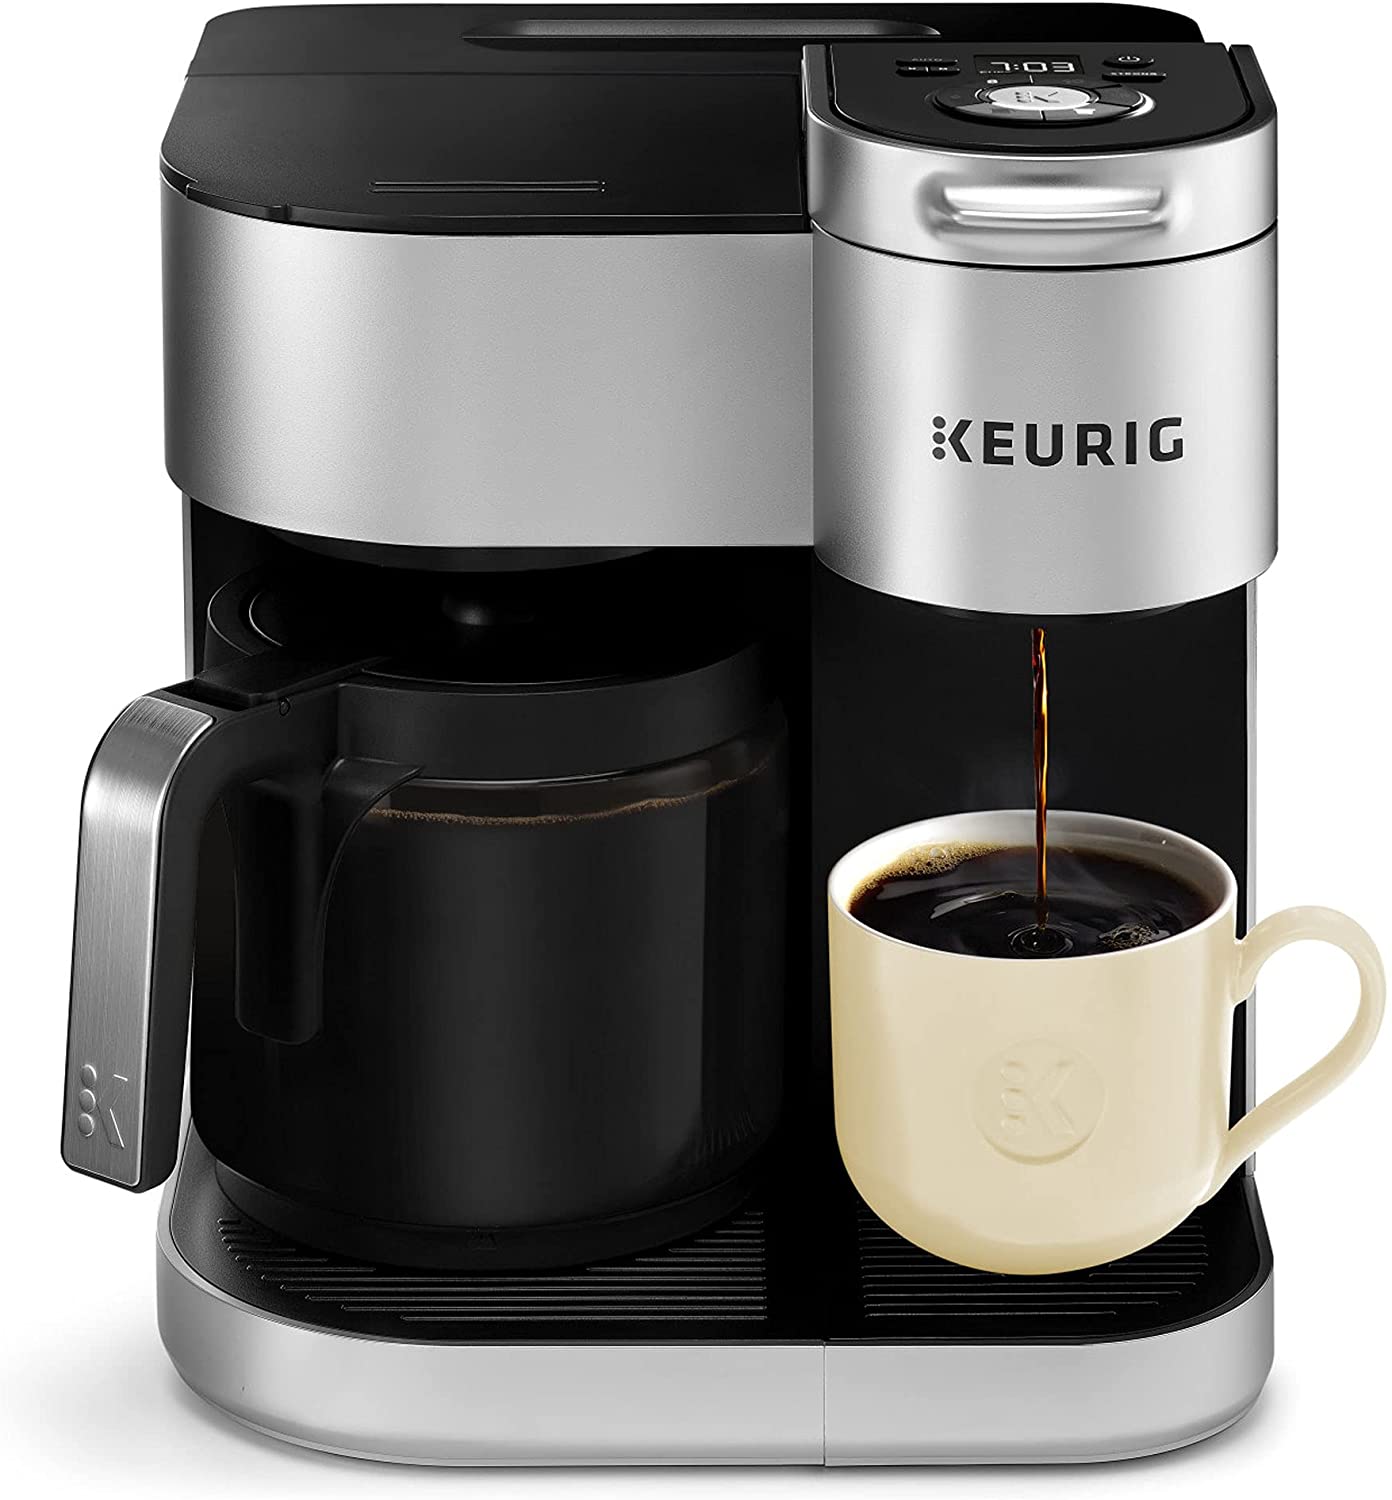 K-Duo Special Edition-keurig coffee maker